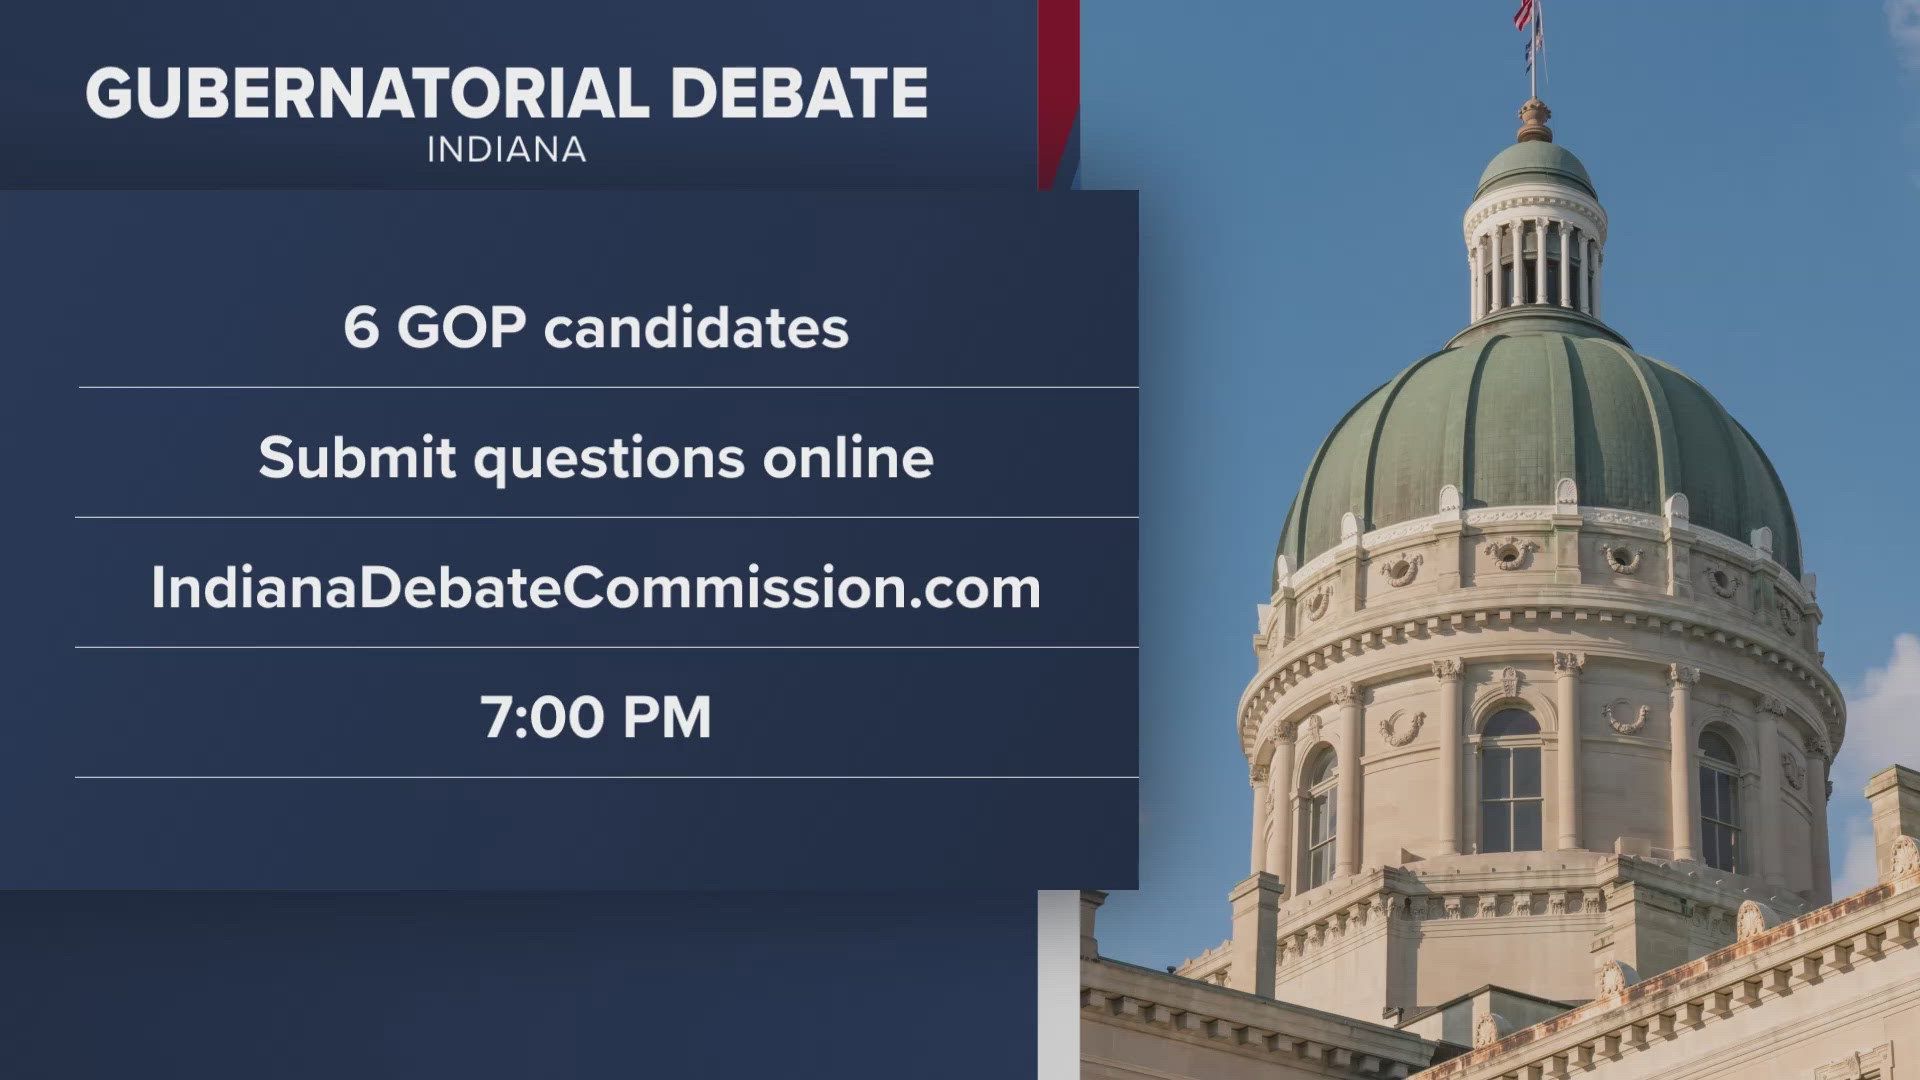 The debate starts at 7 p.m.